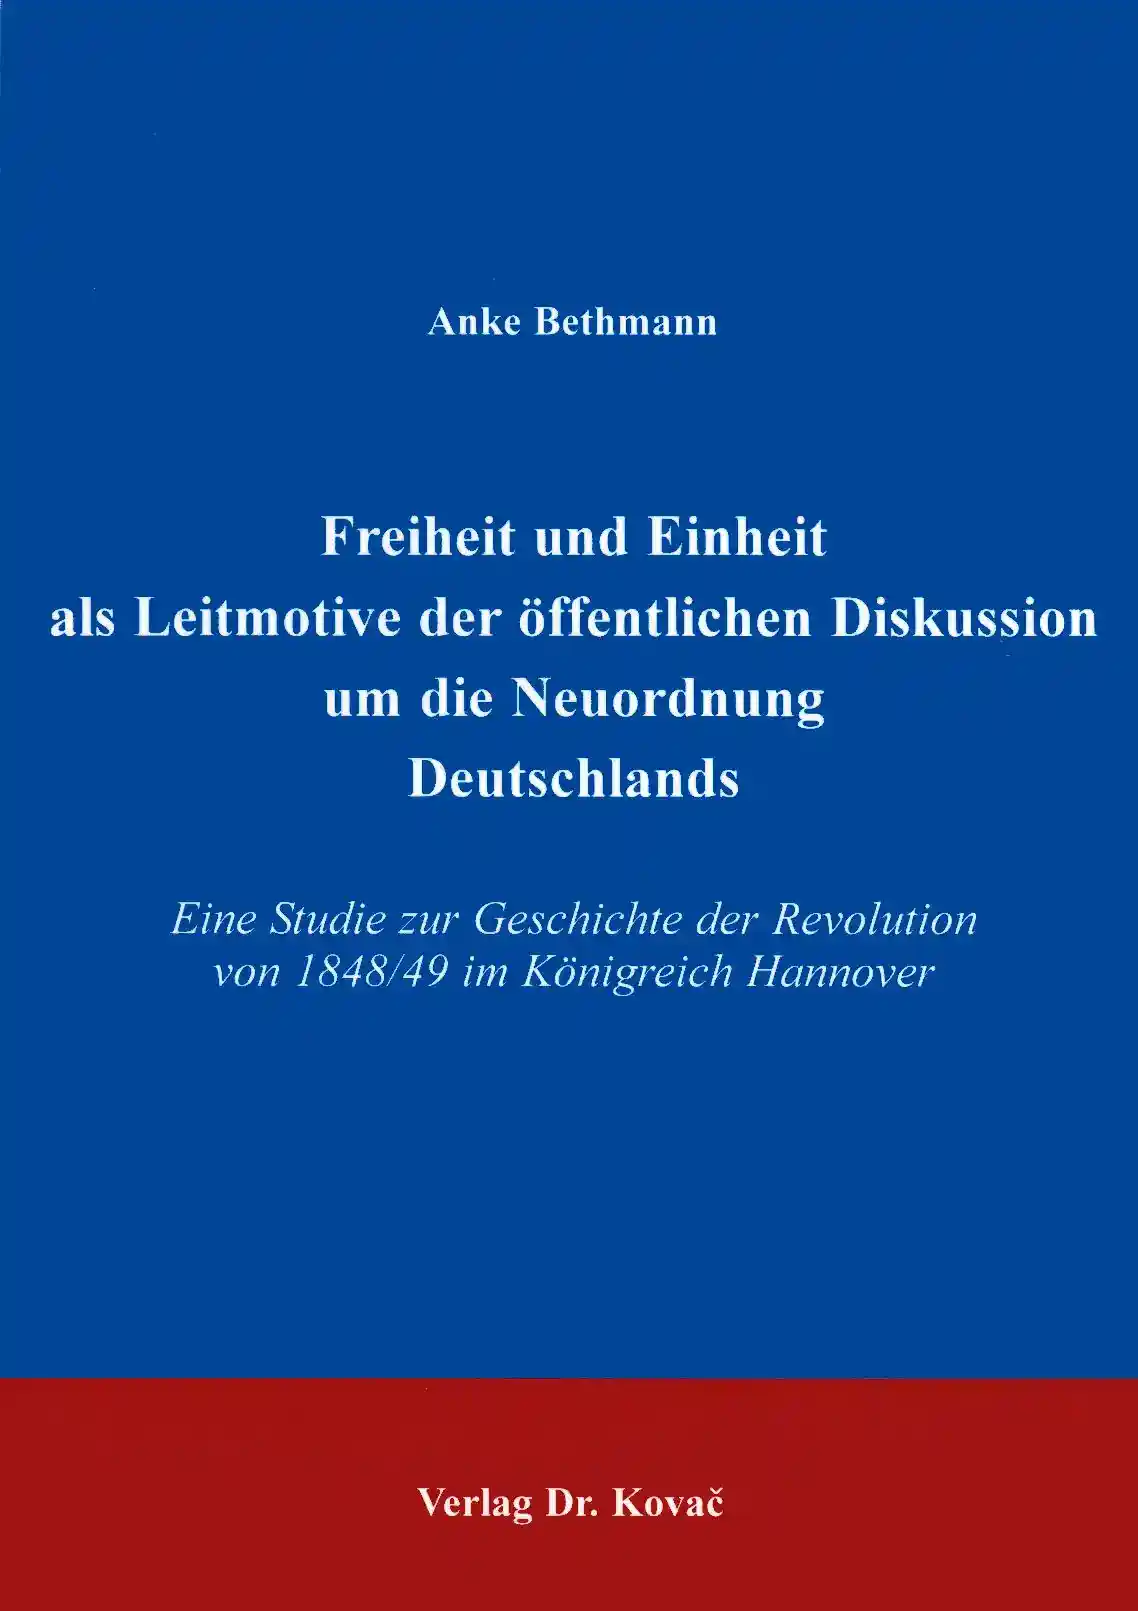 Freiheit und Einheit als Leitmotive der öffentlichen Diskussion um die Neuordnung Deutschlands (Doktorarbeit)